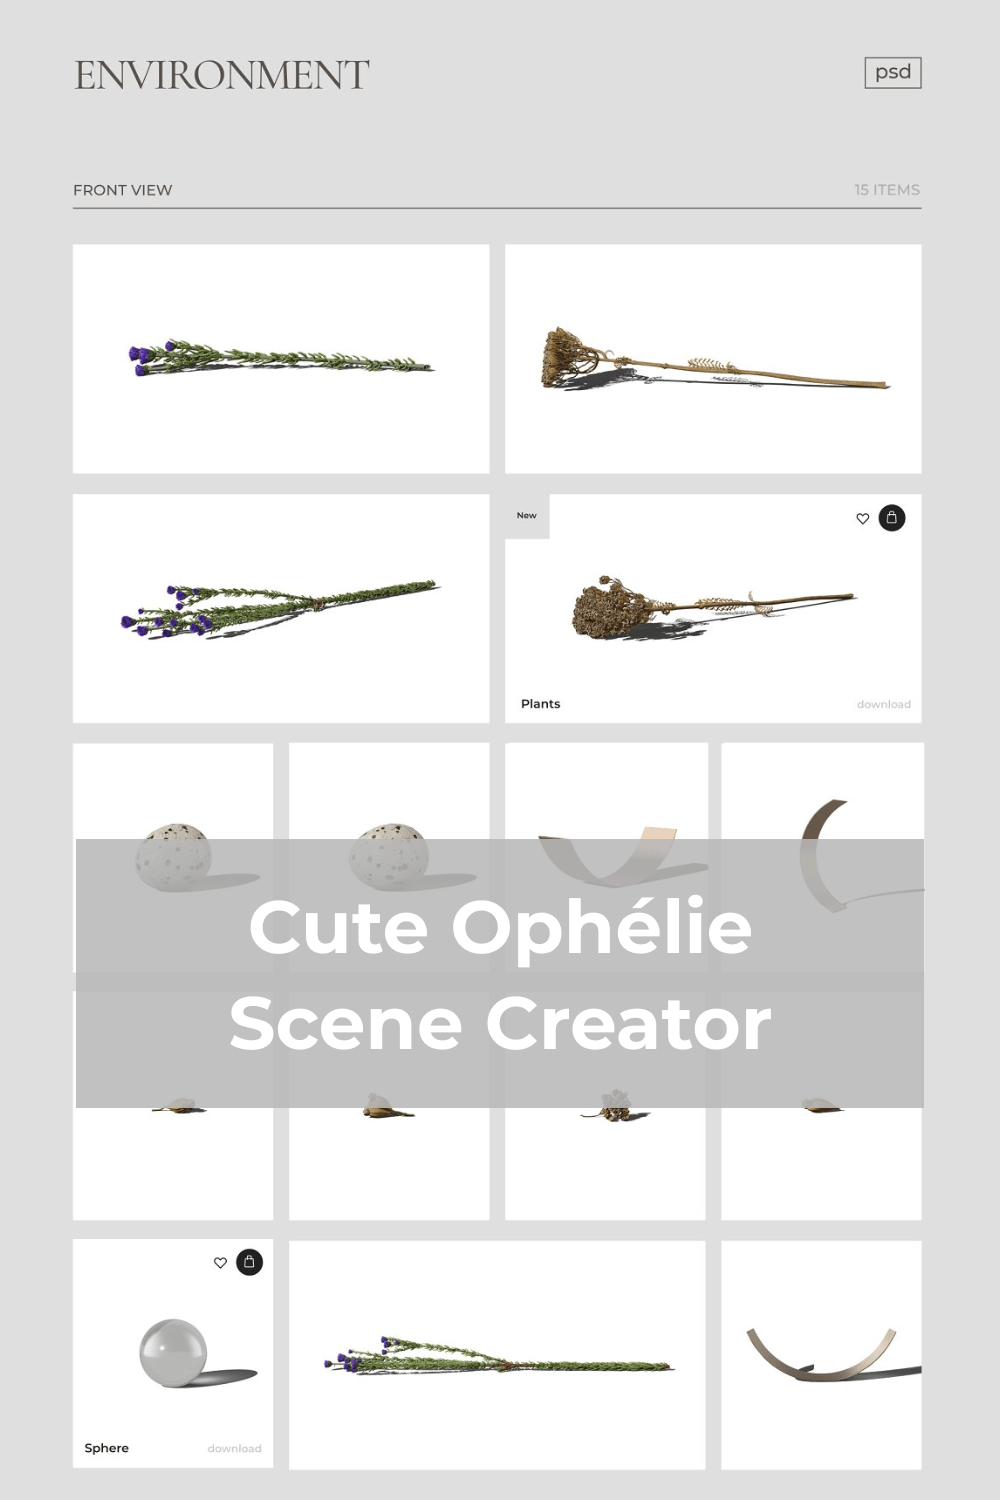 Environment for Cute Ophélie – Scene Creator.